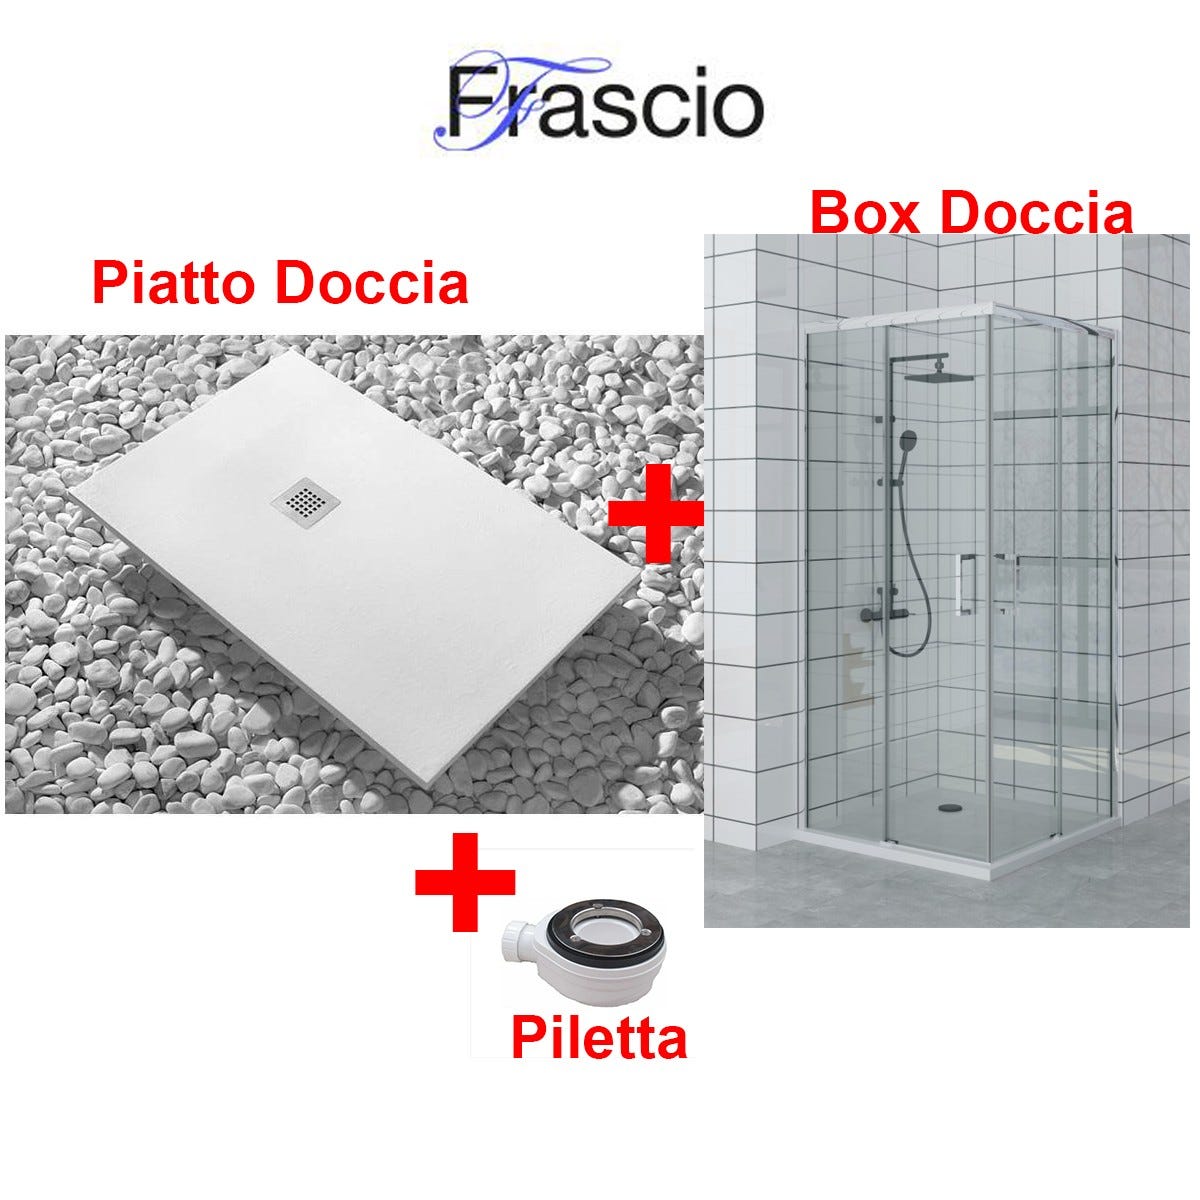 Piatto Doccia 80X120 cm Vulcano Line Extra Slim Bianco + Box